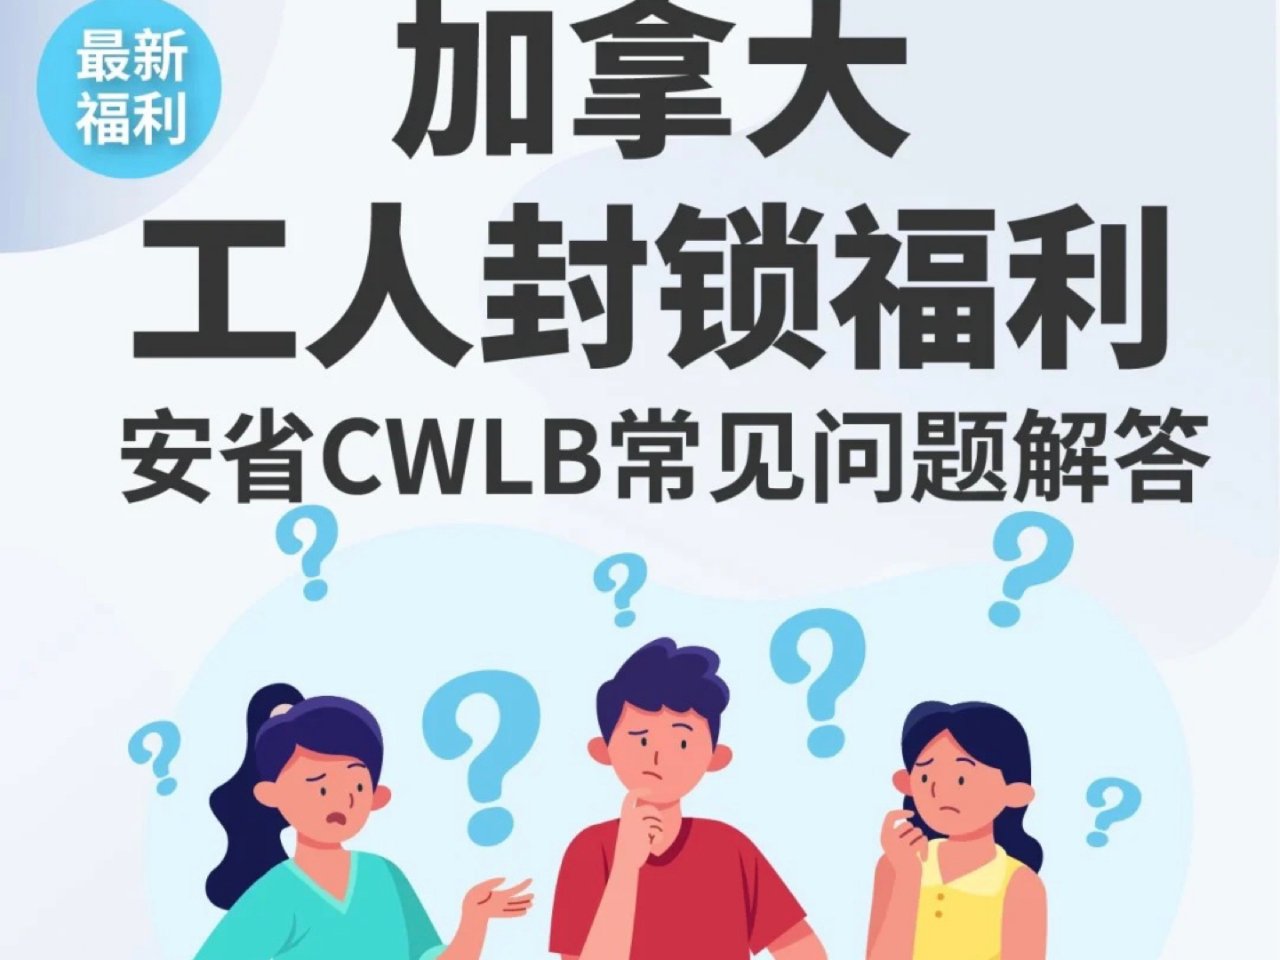 🇨🇦加拿大CWLB工人封锁福利详细解答...